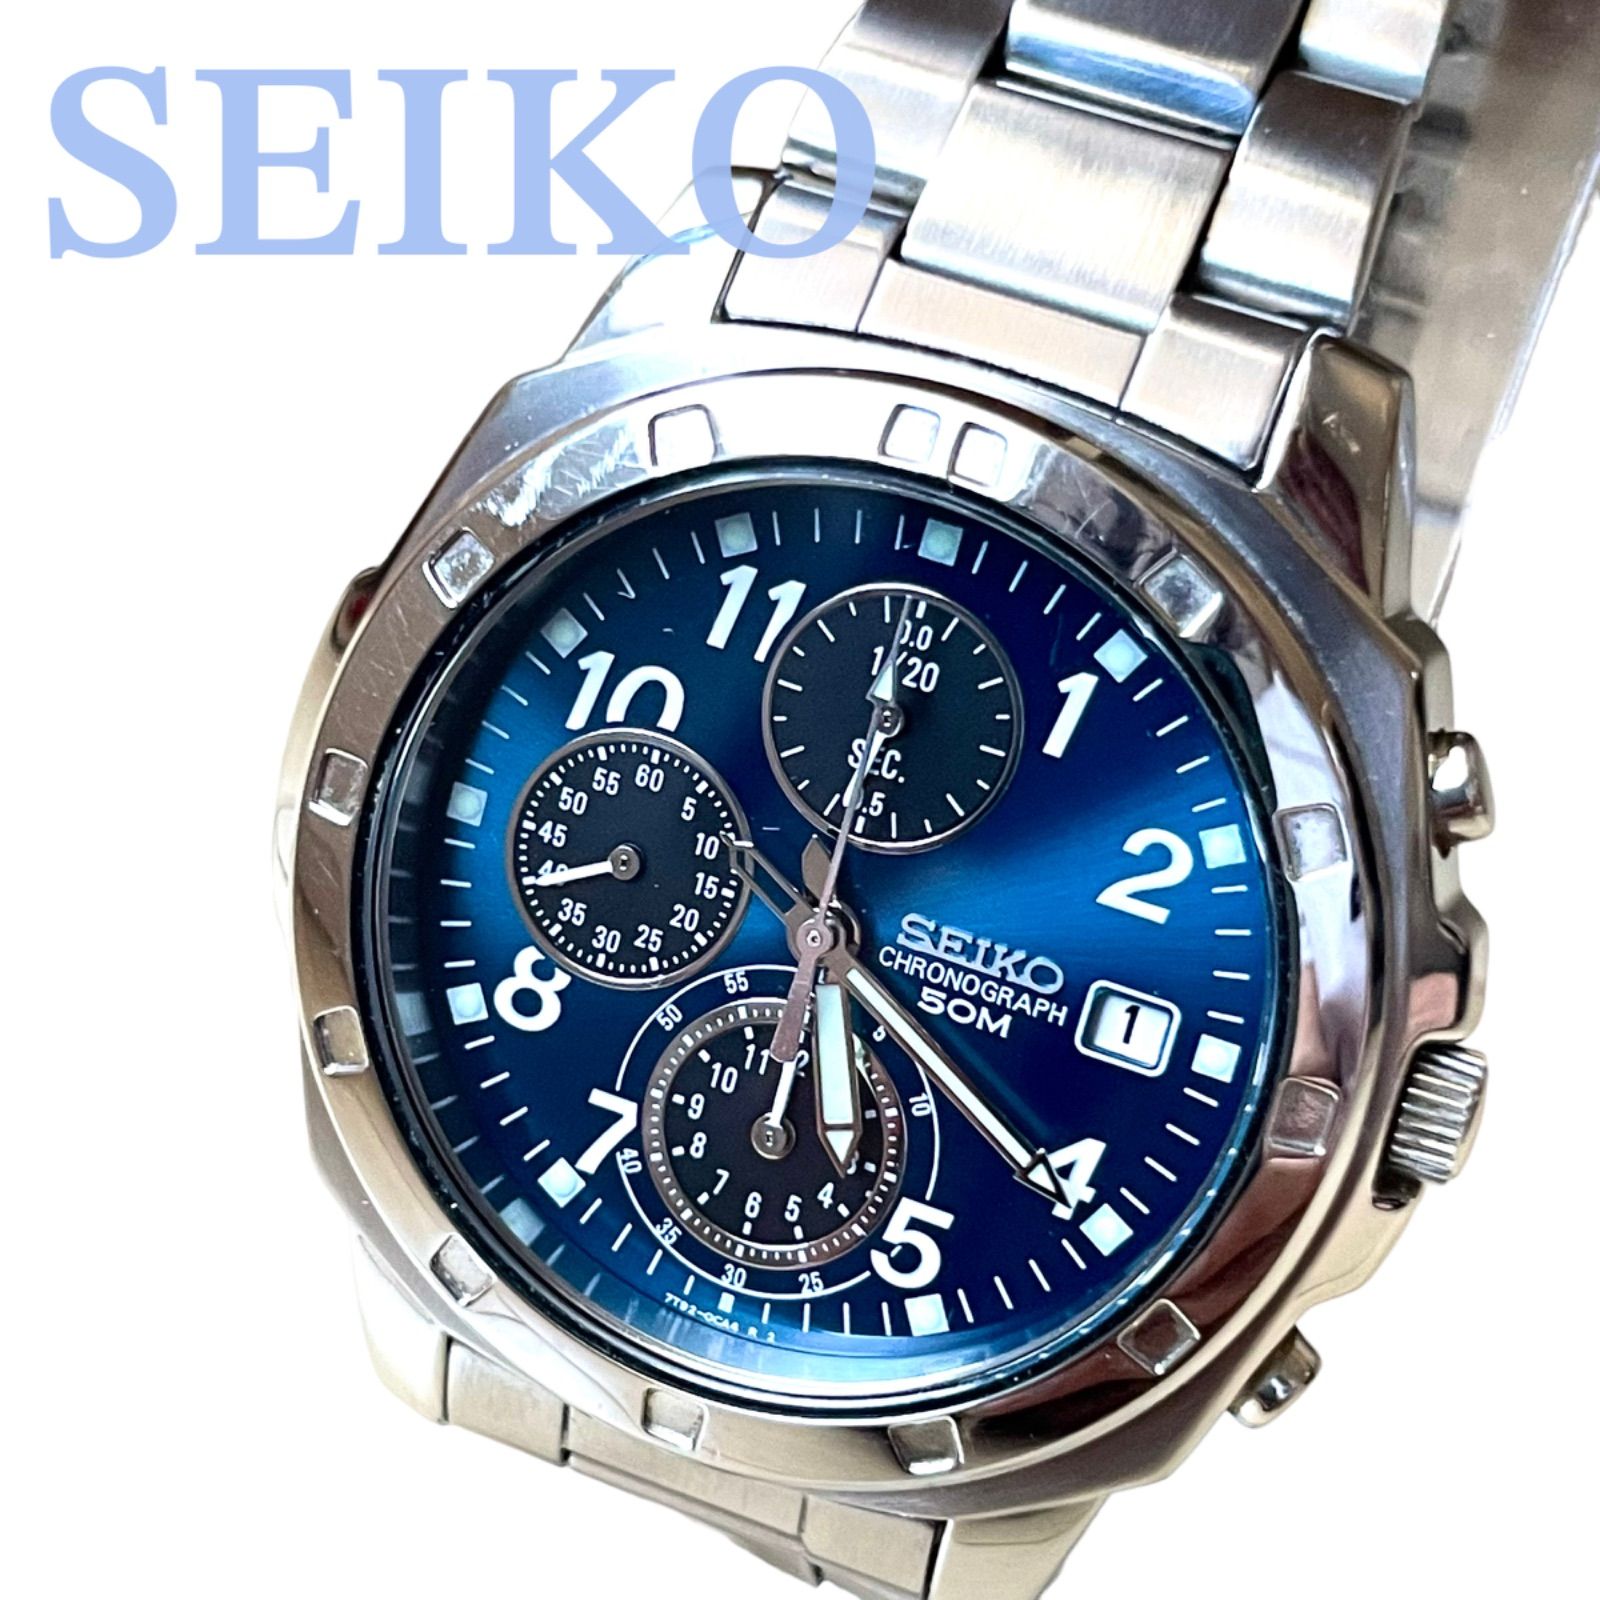 SEIKO セイコー アナログ時計 腕時計 メンズ クロノグラフ 多針 青文字 